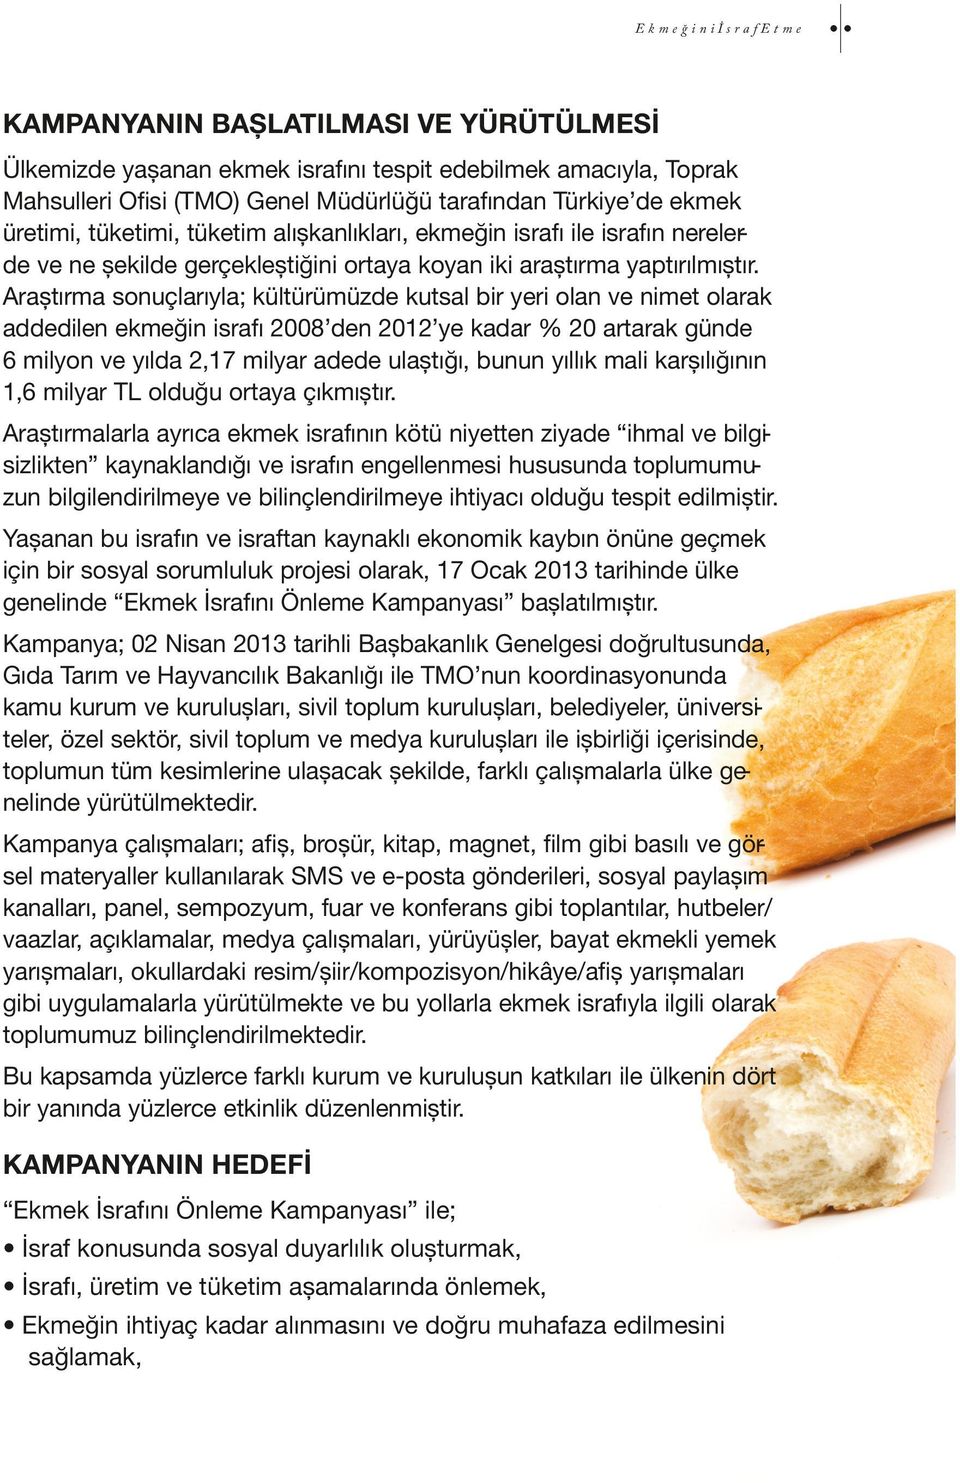 Araștırma sonuçlarıyla; kültürümüzde kutsal bir yeri olan ve nimet olarak addedilen ekmeğin israfı 2008 den 2012 ye kadar % 20 artarak günde 6 milyon ve yılda 2,17 milyar adede ulaștığı, bunun yıllık